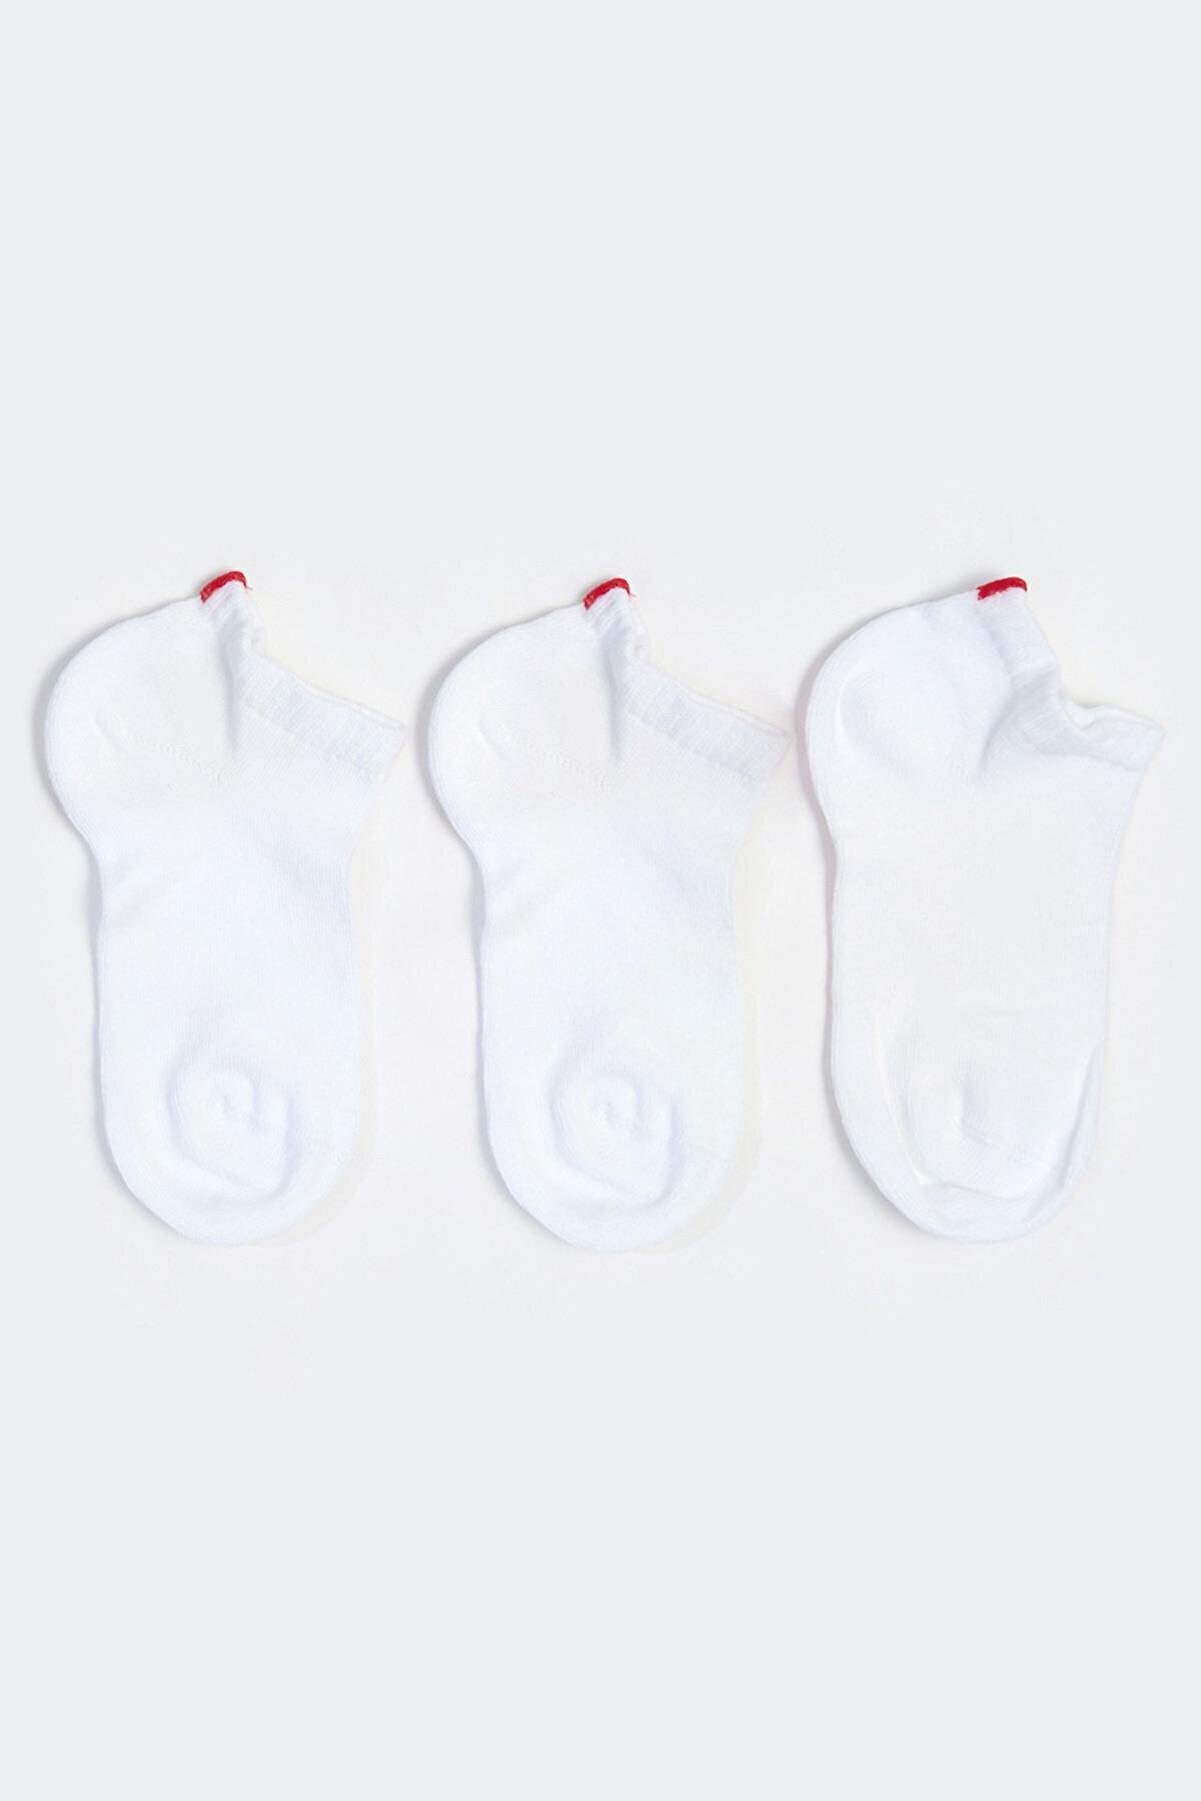 Katia & Bony Run 3 Lü Çocuk Basic Patik Çorap Beyaz/beyaz/beyaz